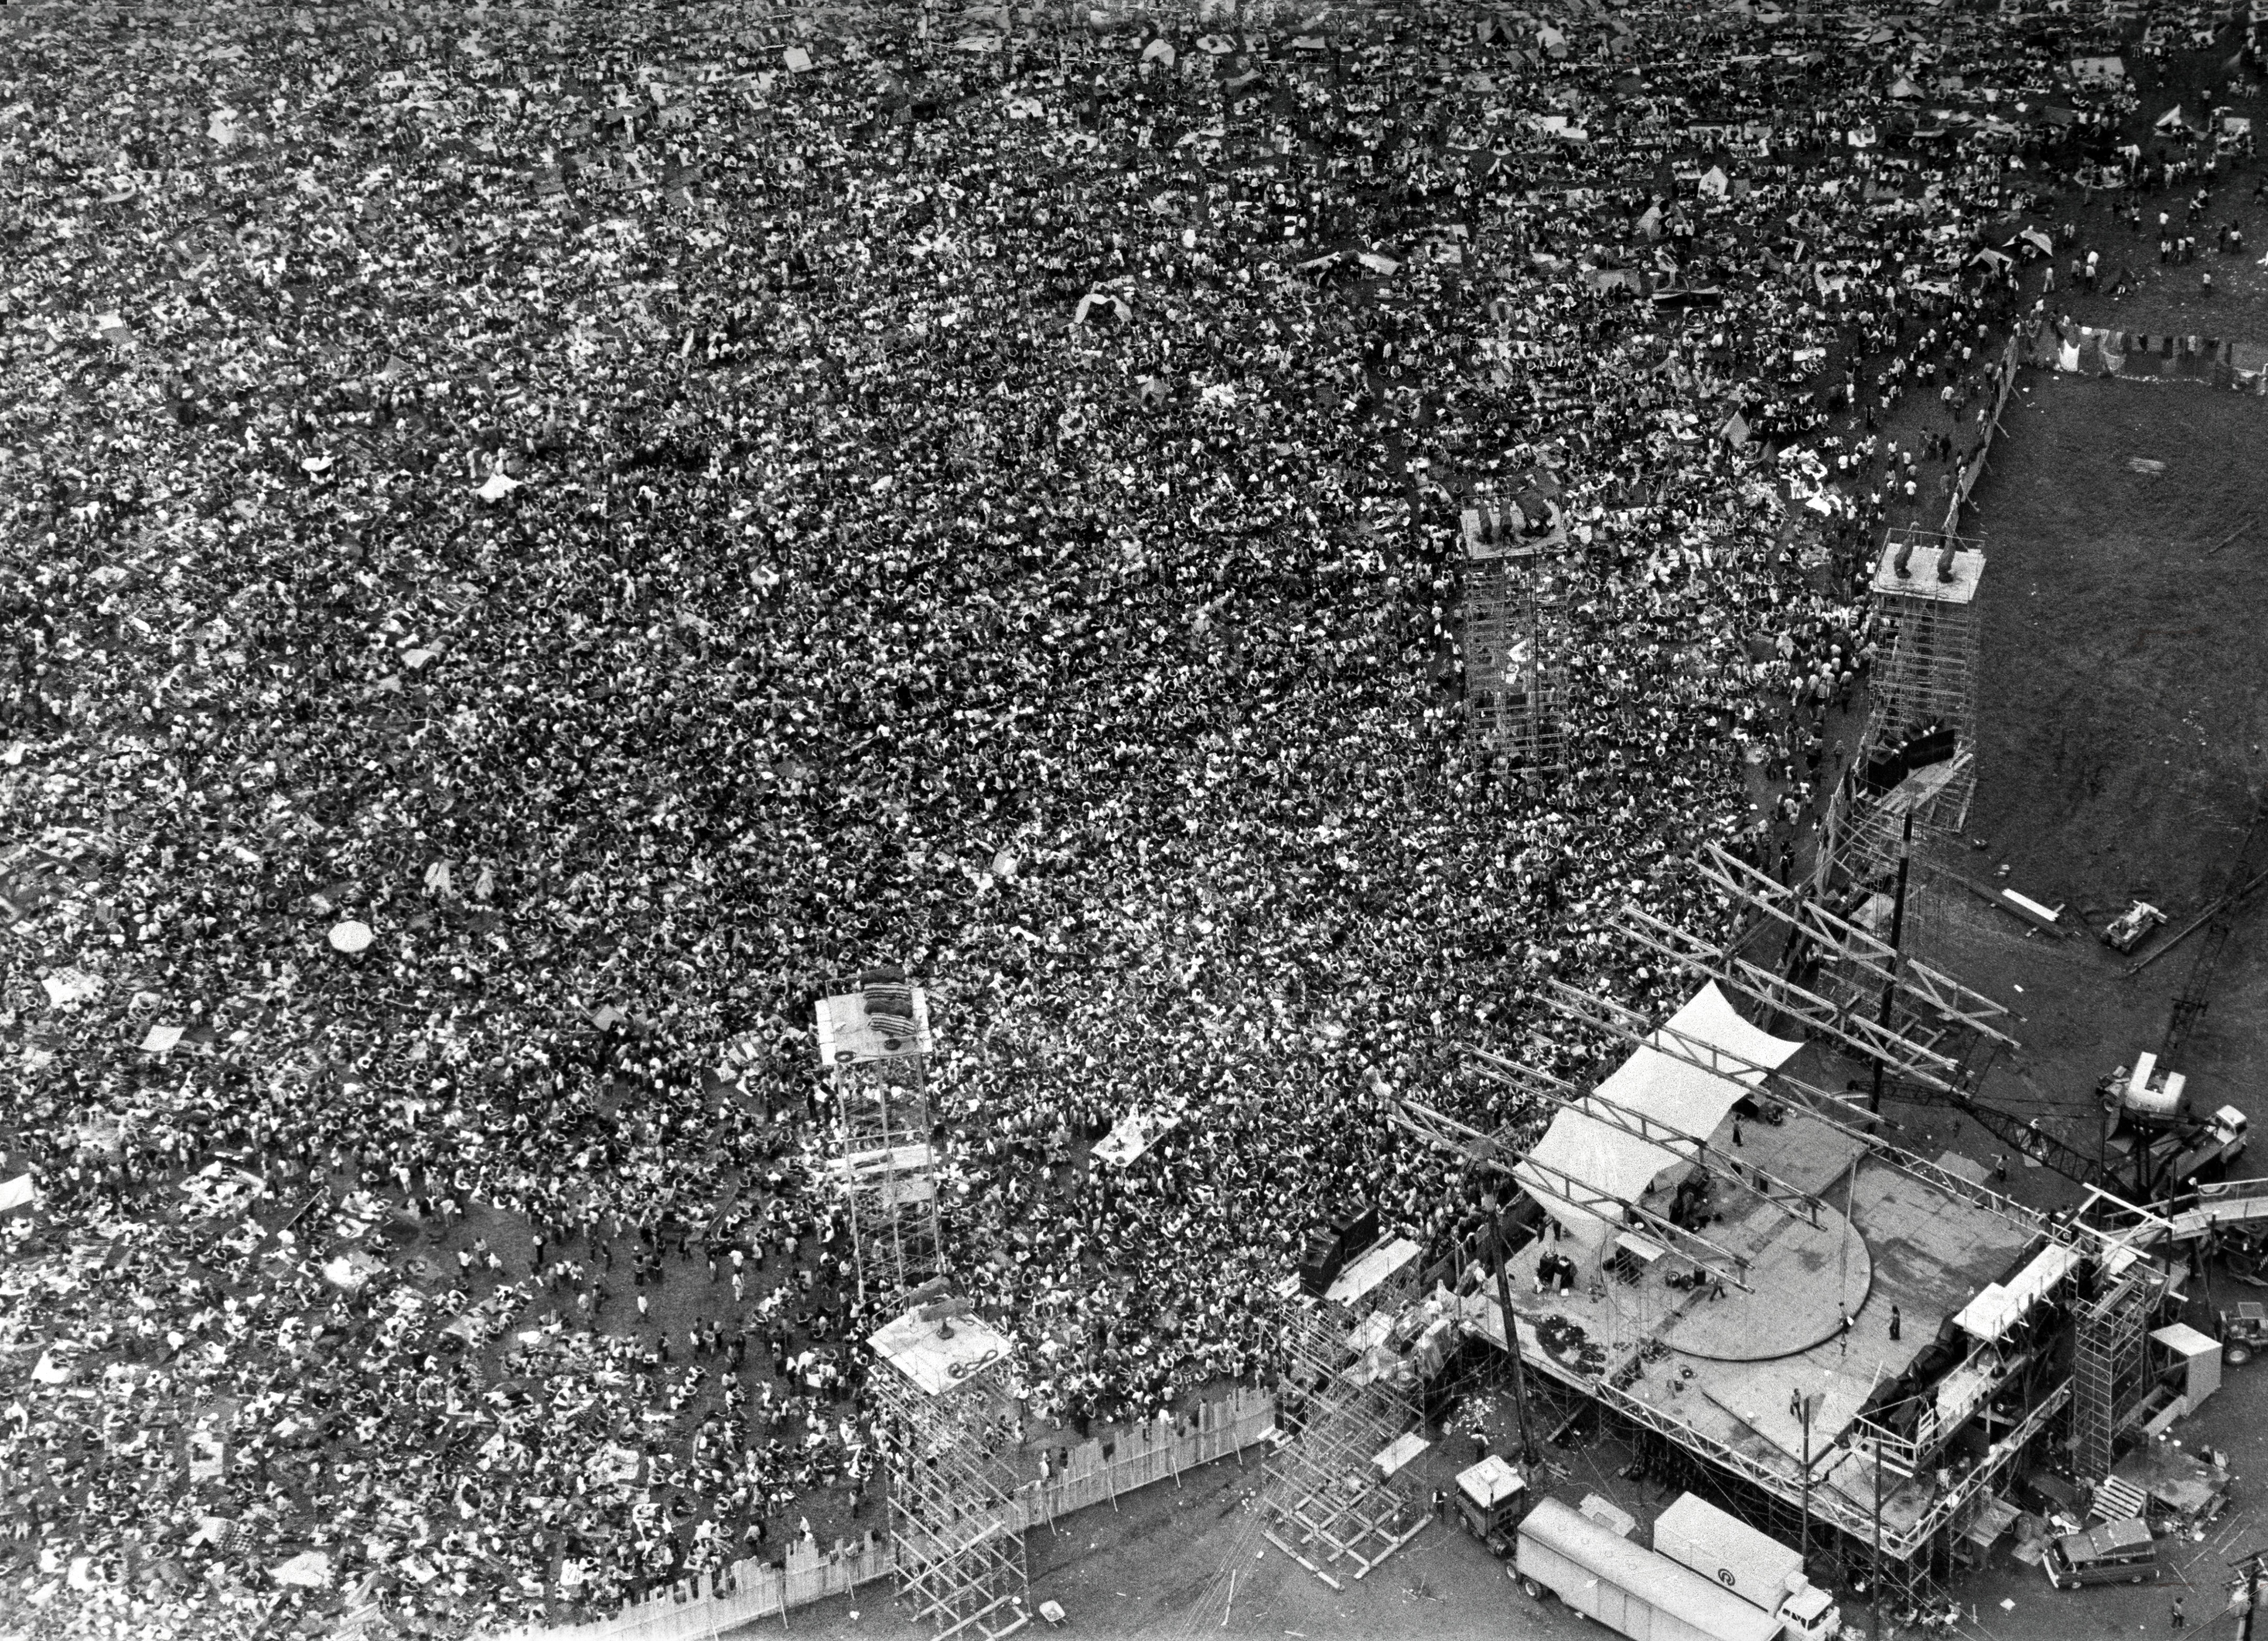 L'ingegnere del suono Bill Hanley commenta la struttura del palco di Woodstock: "Andò molto bene. Avevo costruito sulle colline delle strutture speciali per gli altoparlanti, e avevo sedici gruppi di altoparlanti su una piattaforma quadrata, che saliva sulla collina su torri di settanta piedi (21 metri). Il tutto era stato settato per poter accogliere da 150.000 a 200.000 ascoltatori. Ne arrivarono 500.000." Dietro il palco erano installati tre trasformatori che fornivano 2.000 Ampere di corrente per alimentare l'apparato di amplificazione